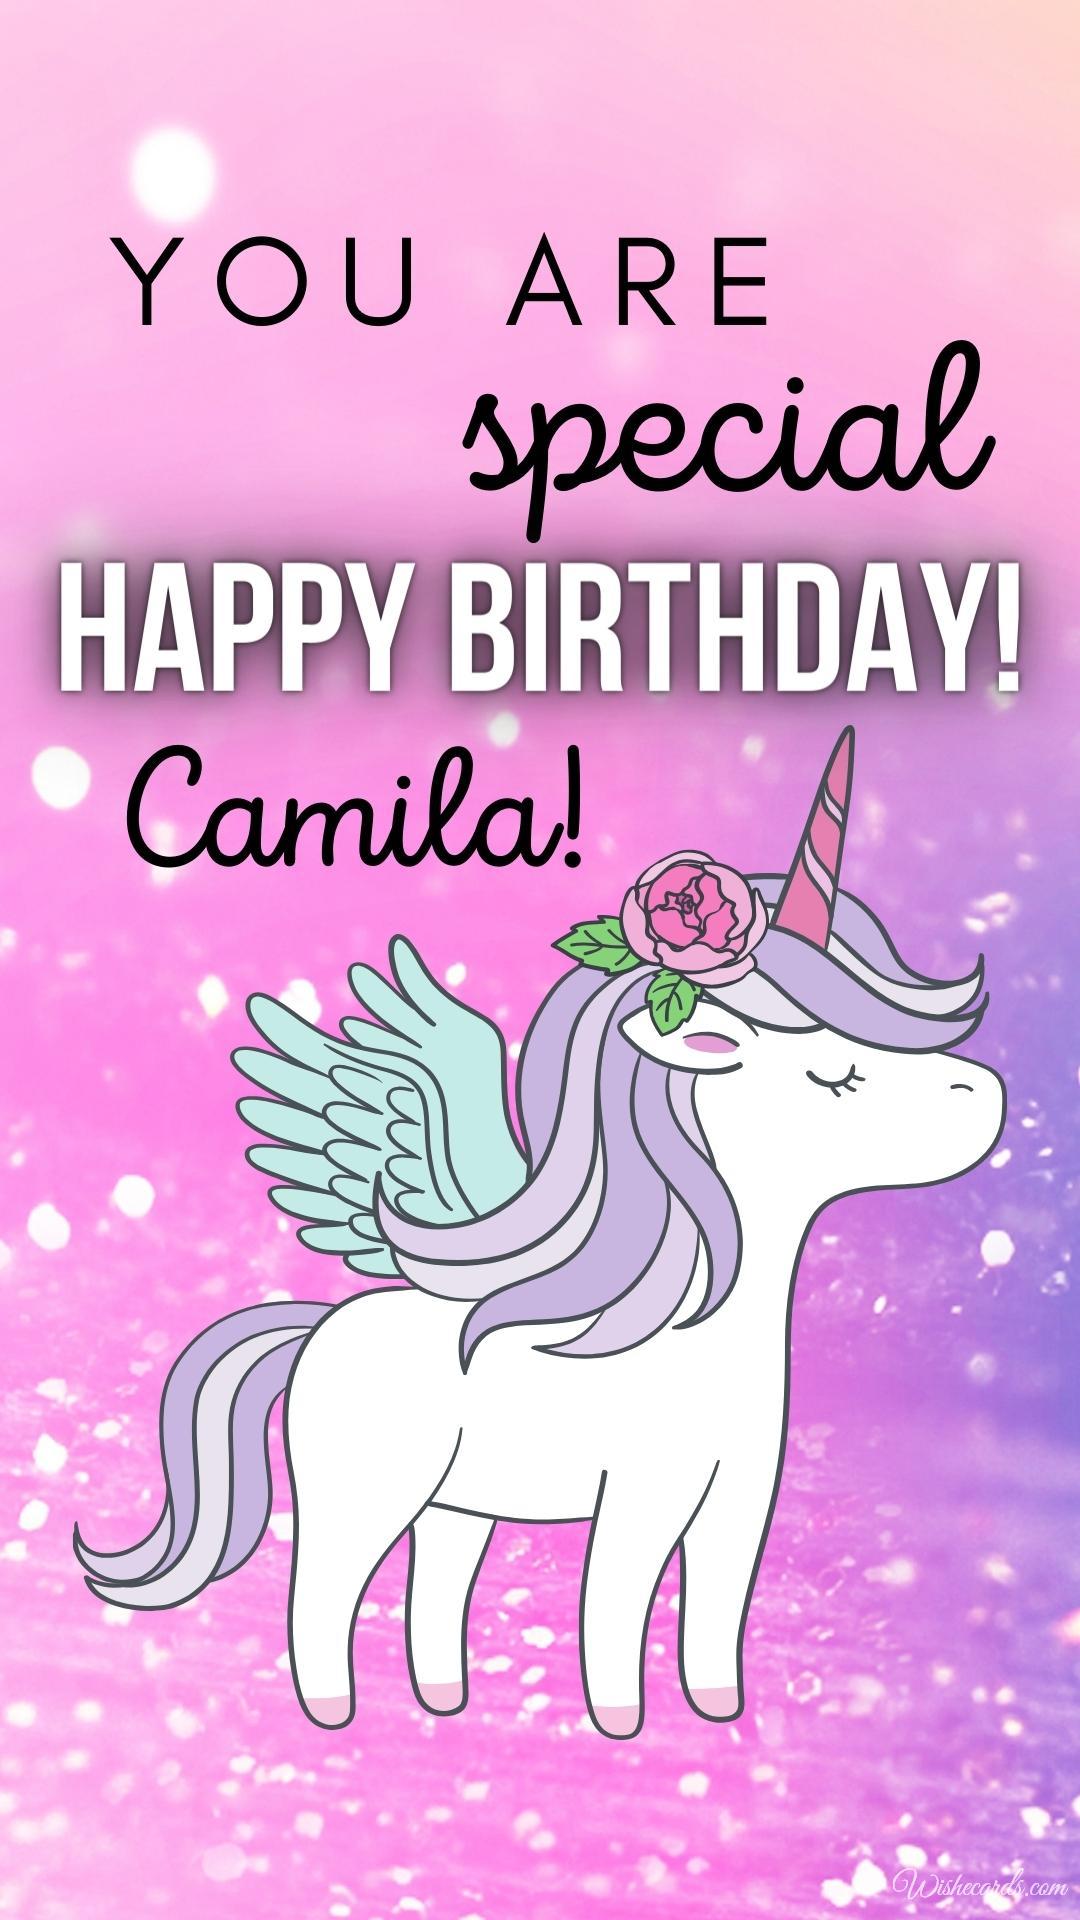 Happy Birthday Camila Image